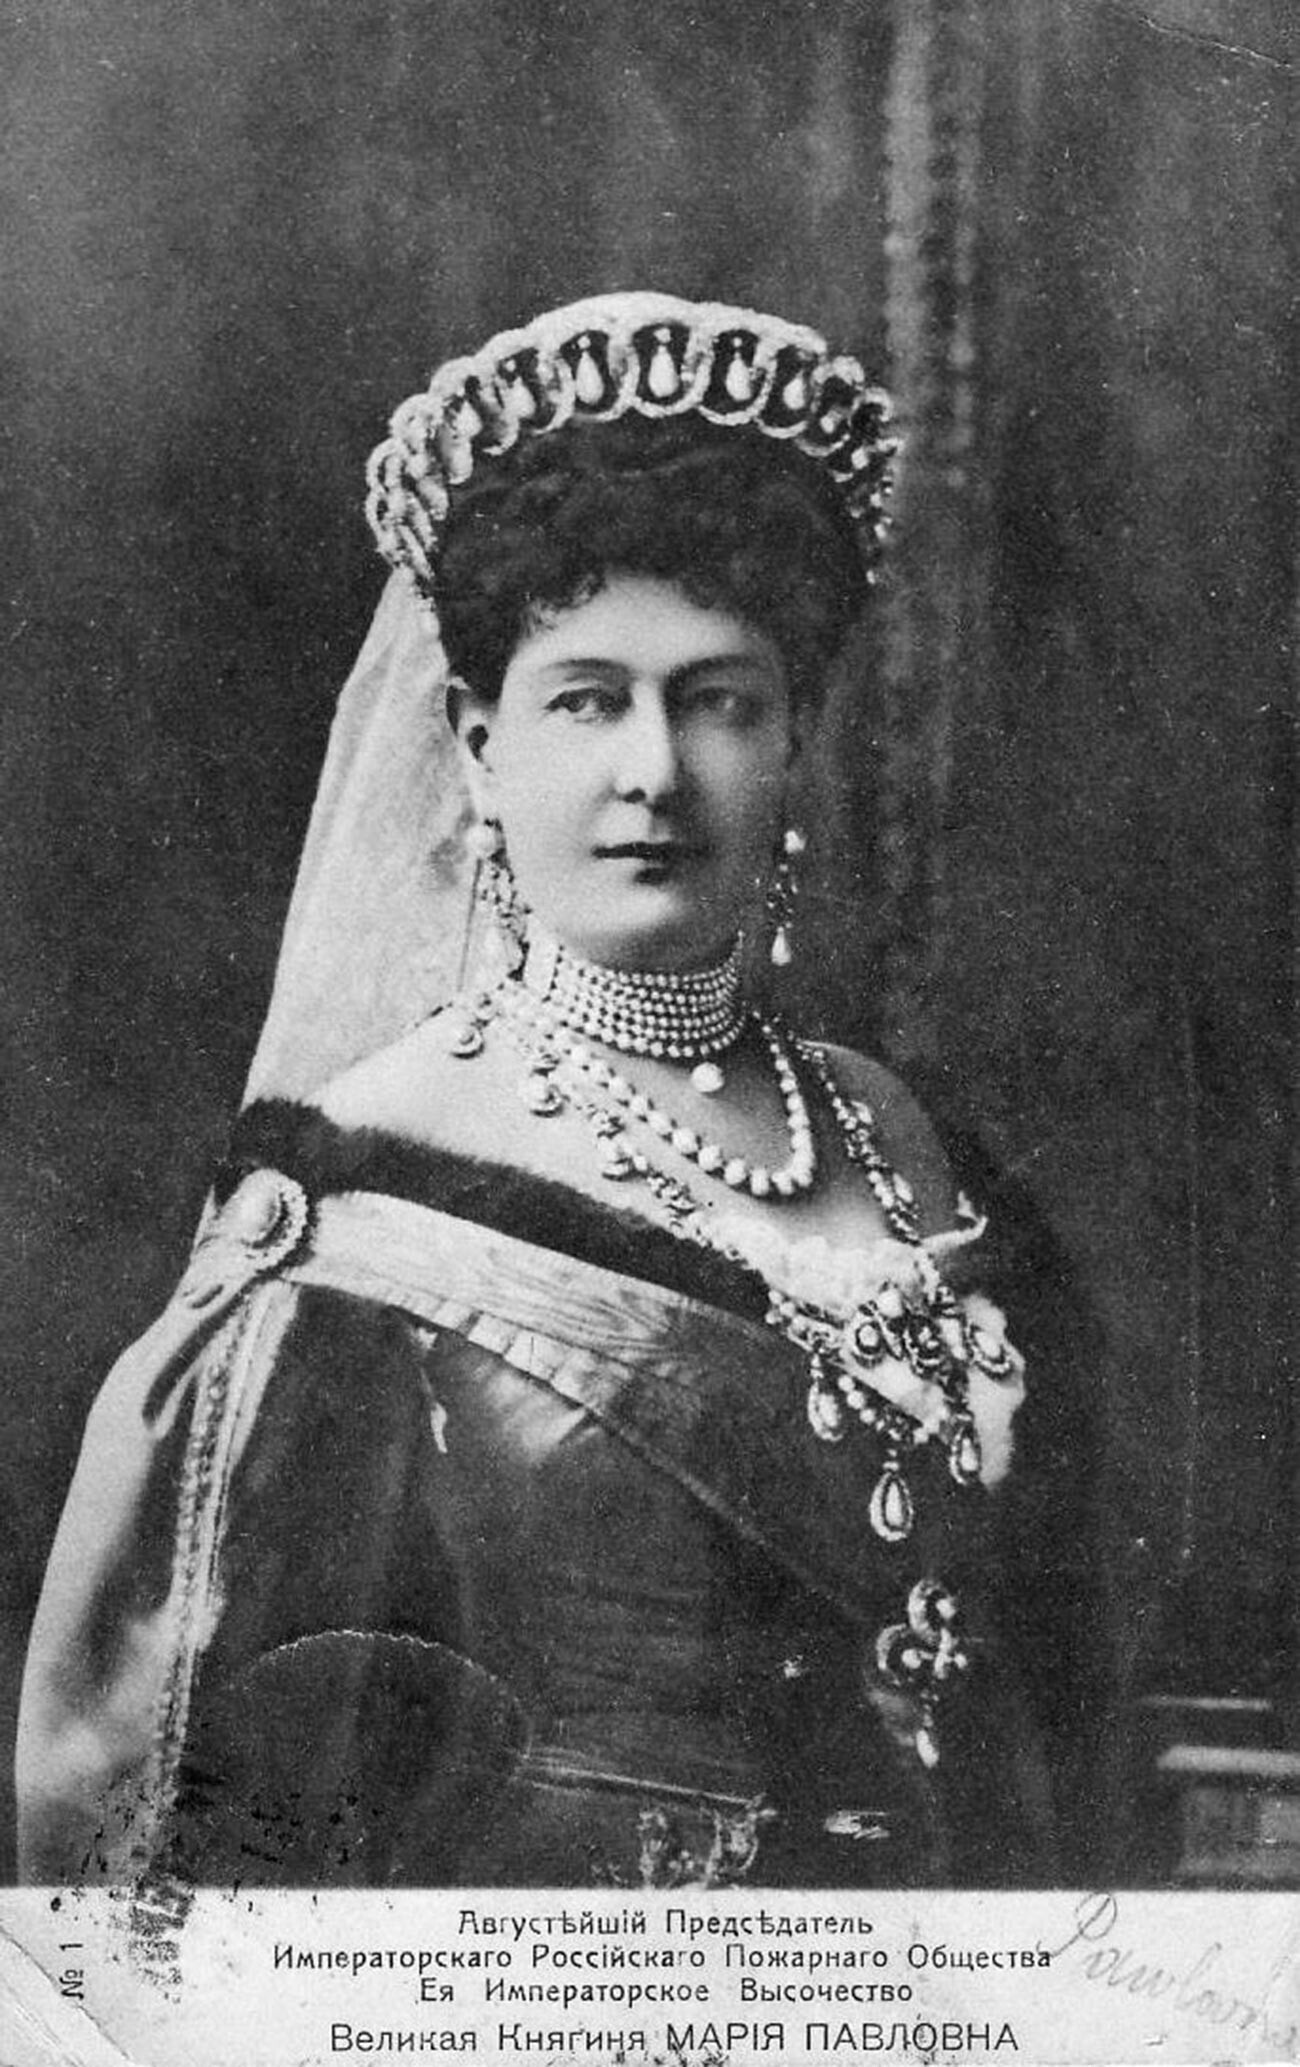 Maria Pavlovna com sua famosa tiara
